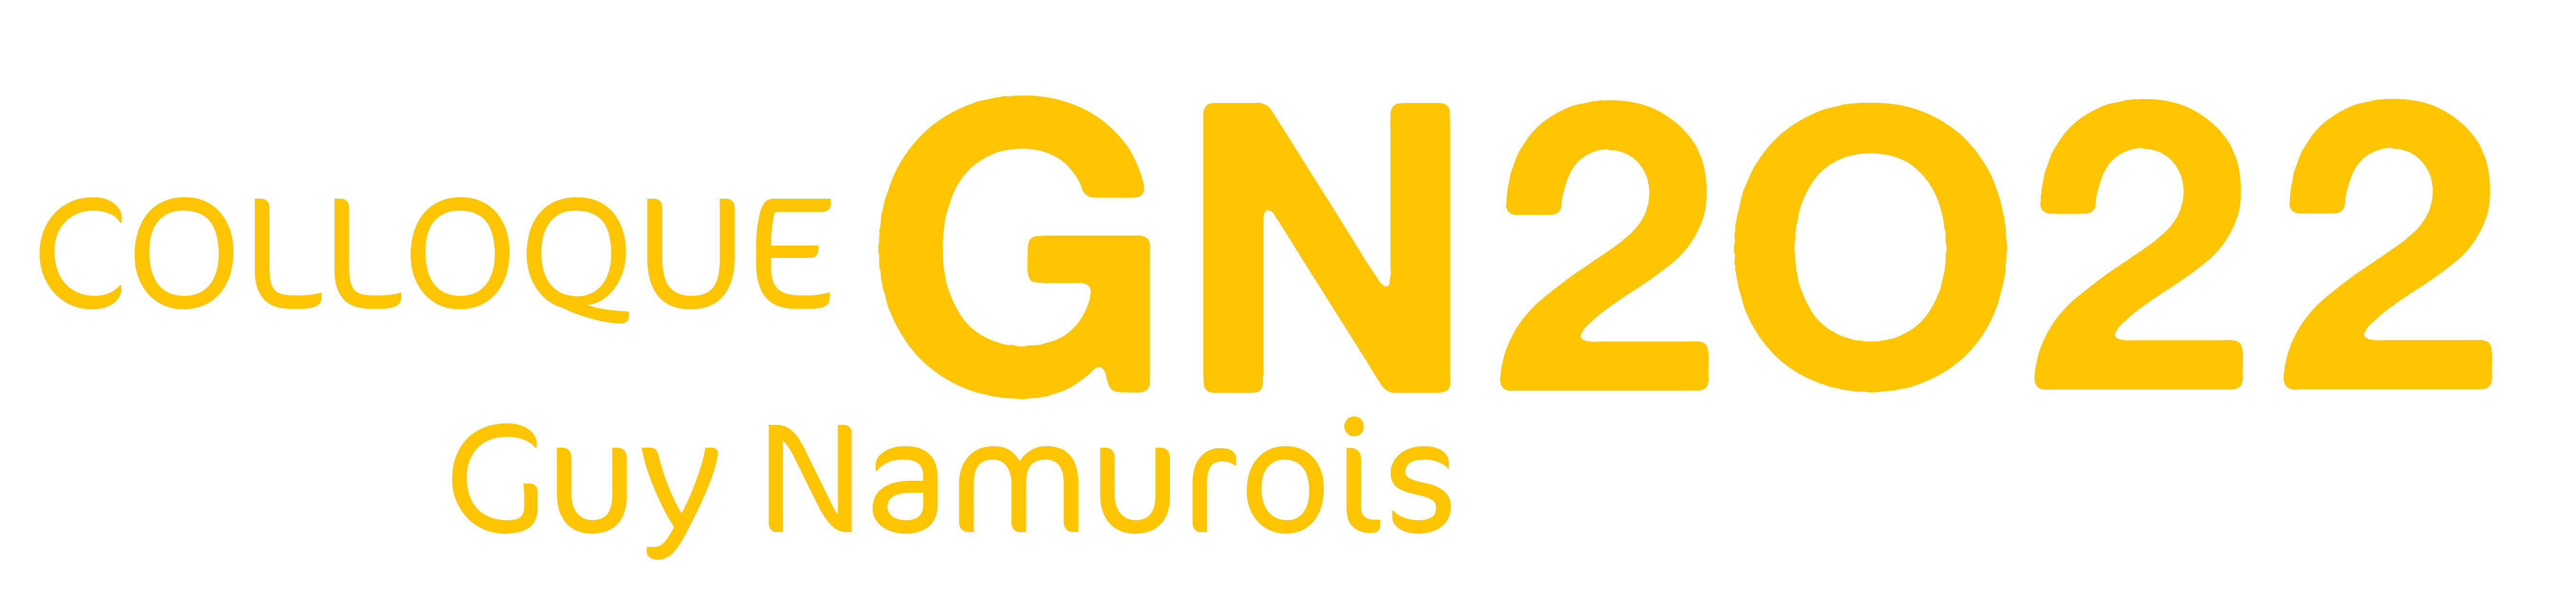 Colloque Guy Namurois 2022